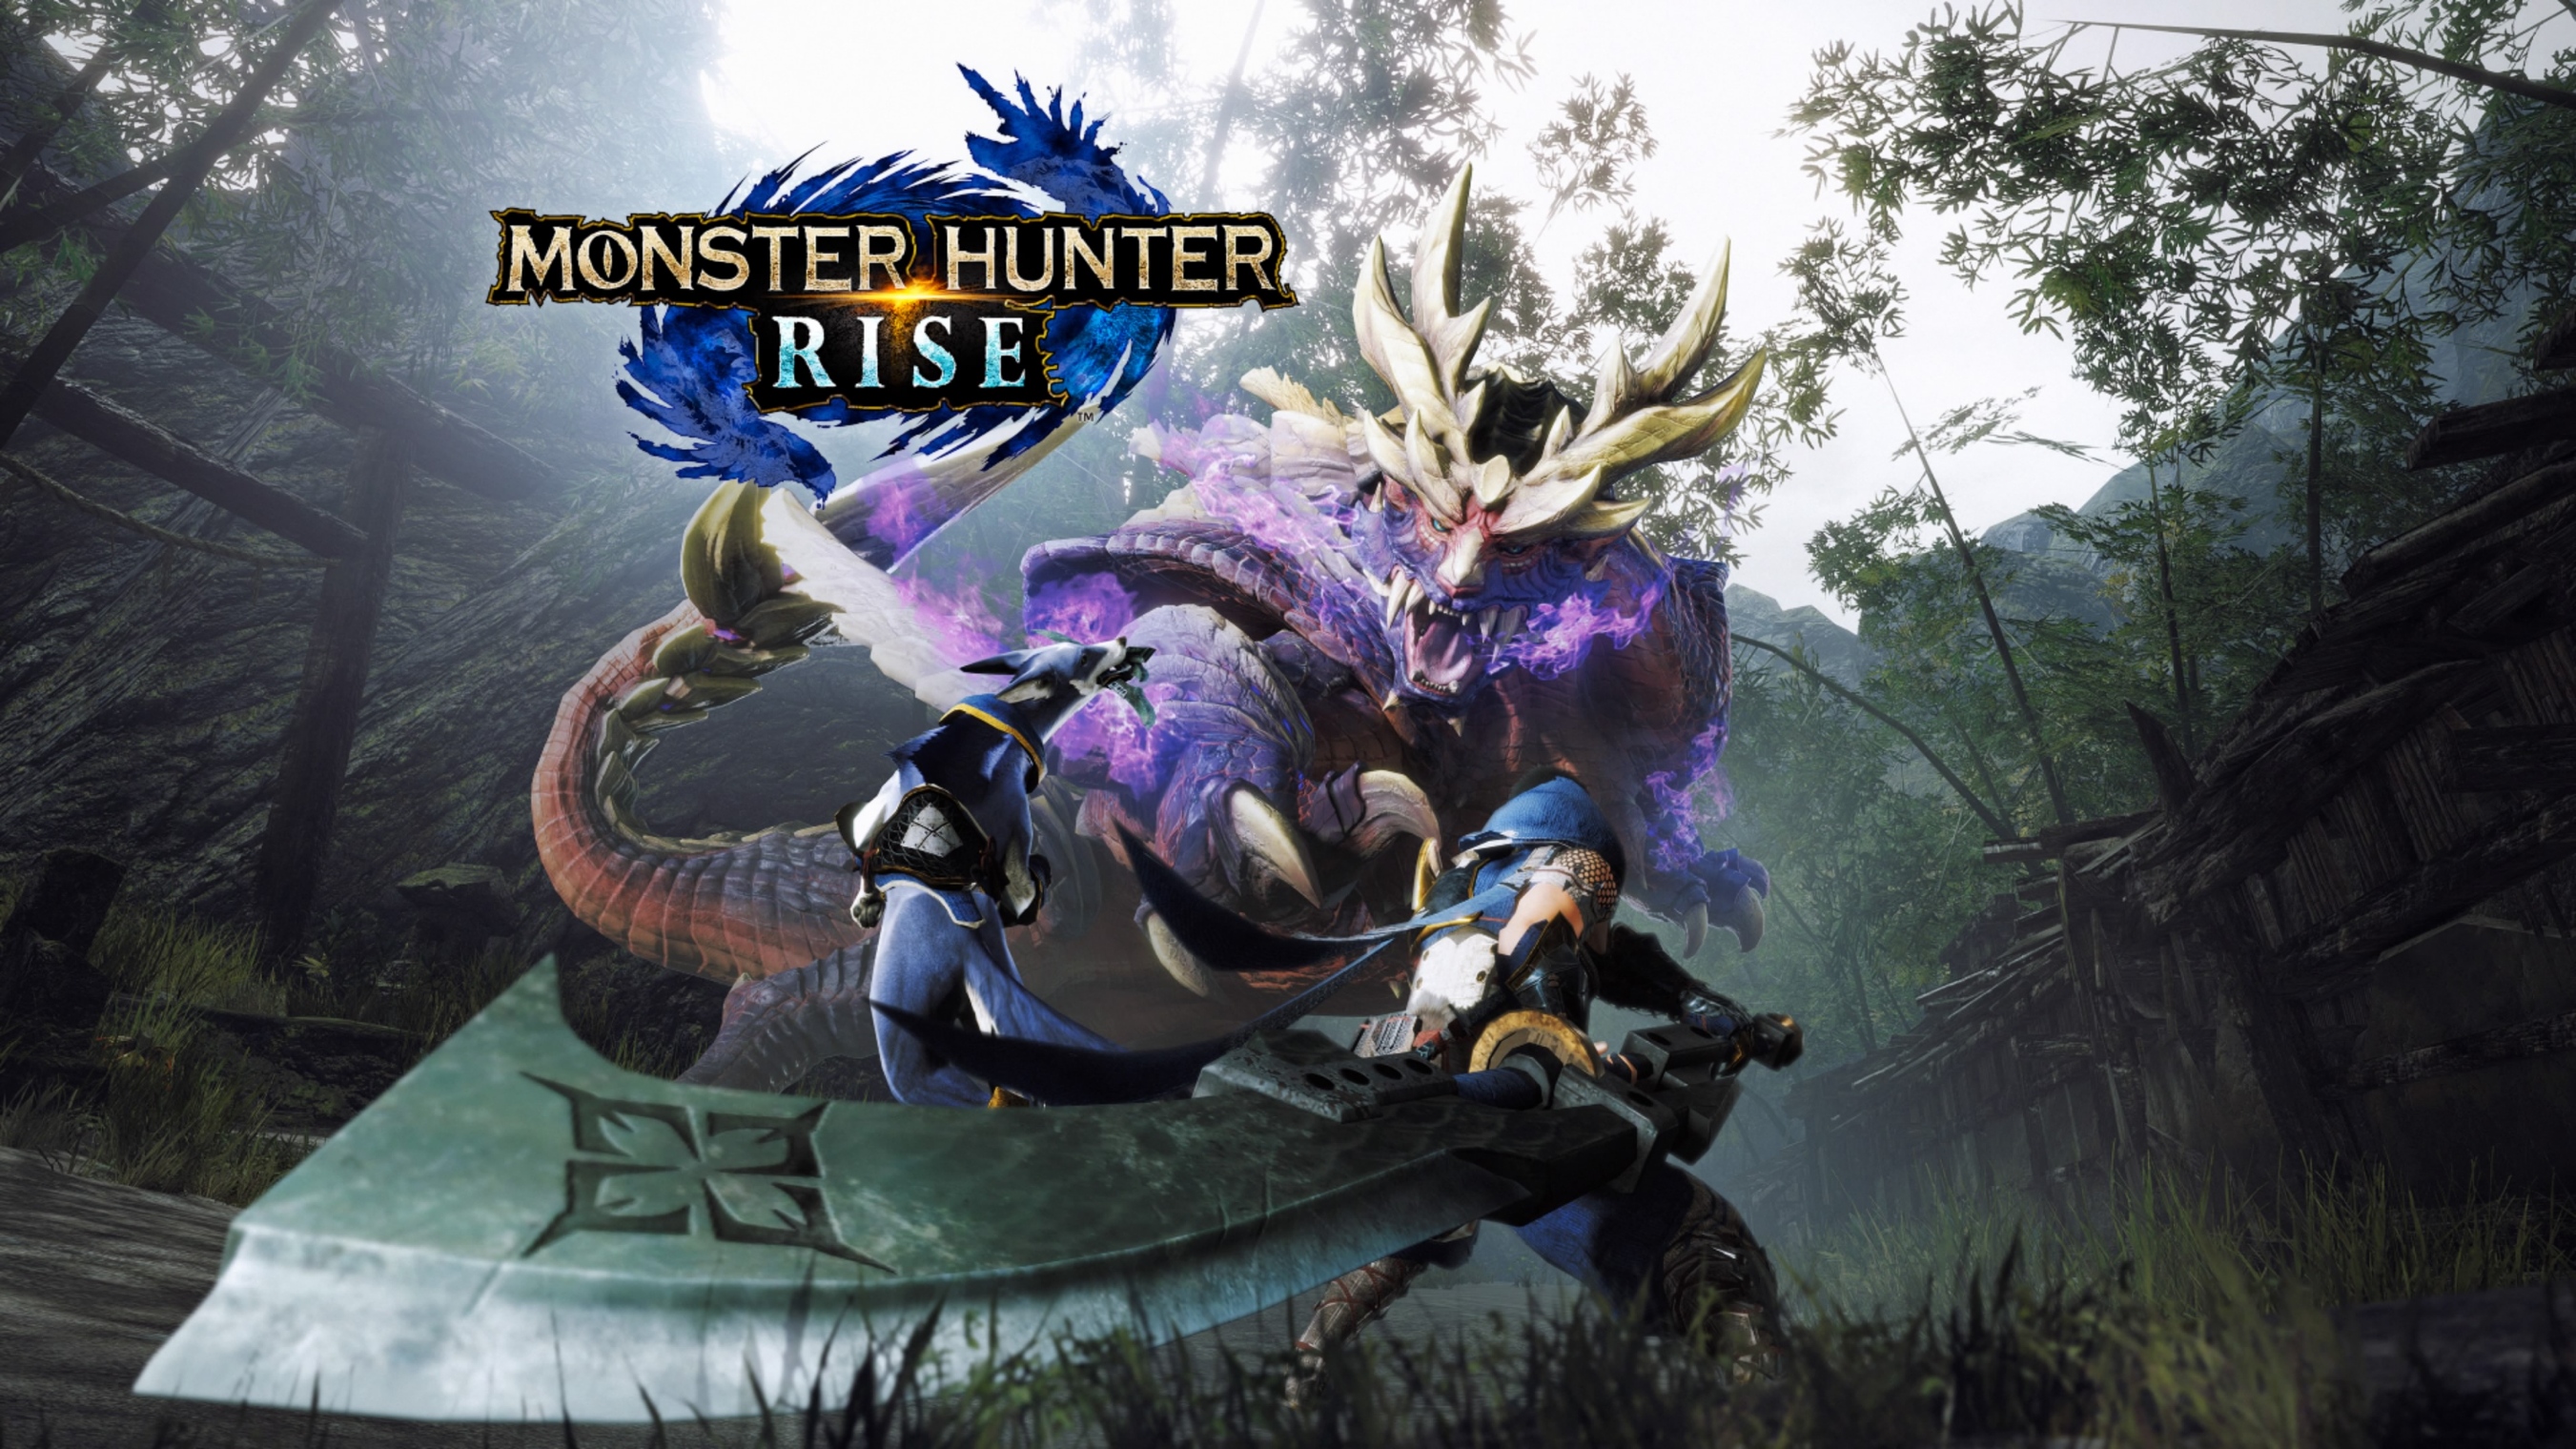 Análise – Monster Hunter Rise